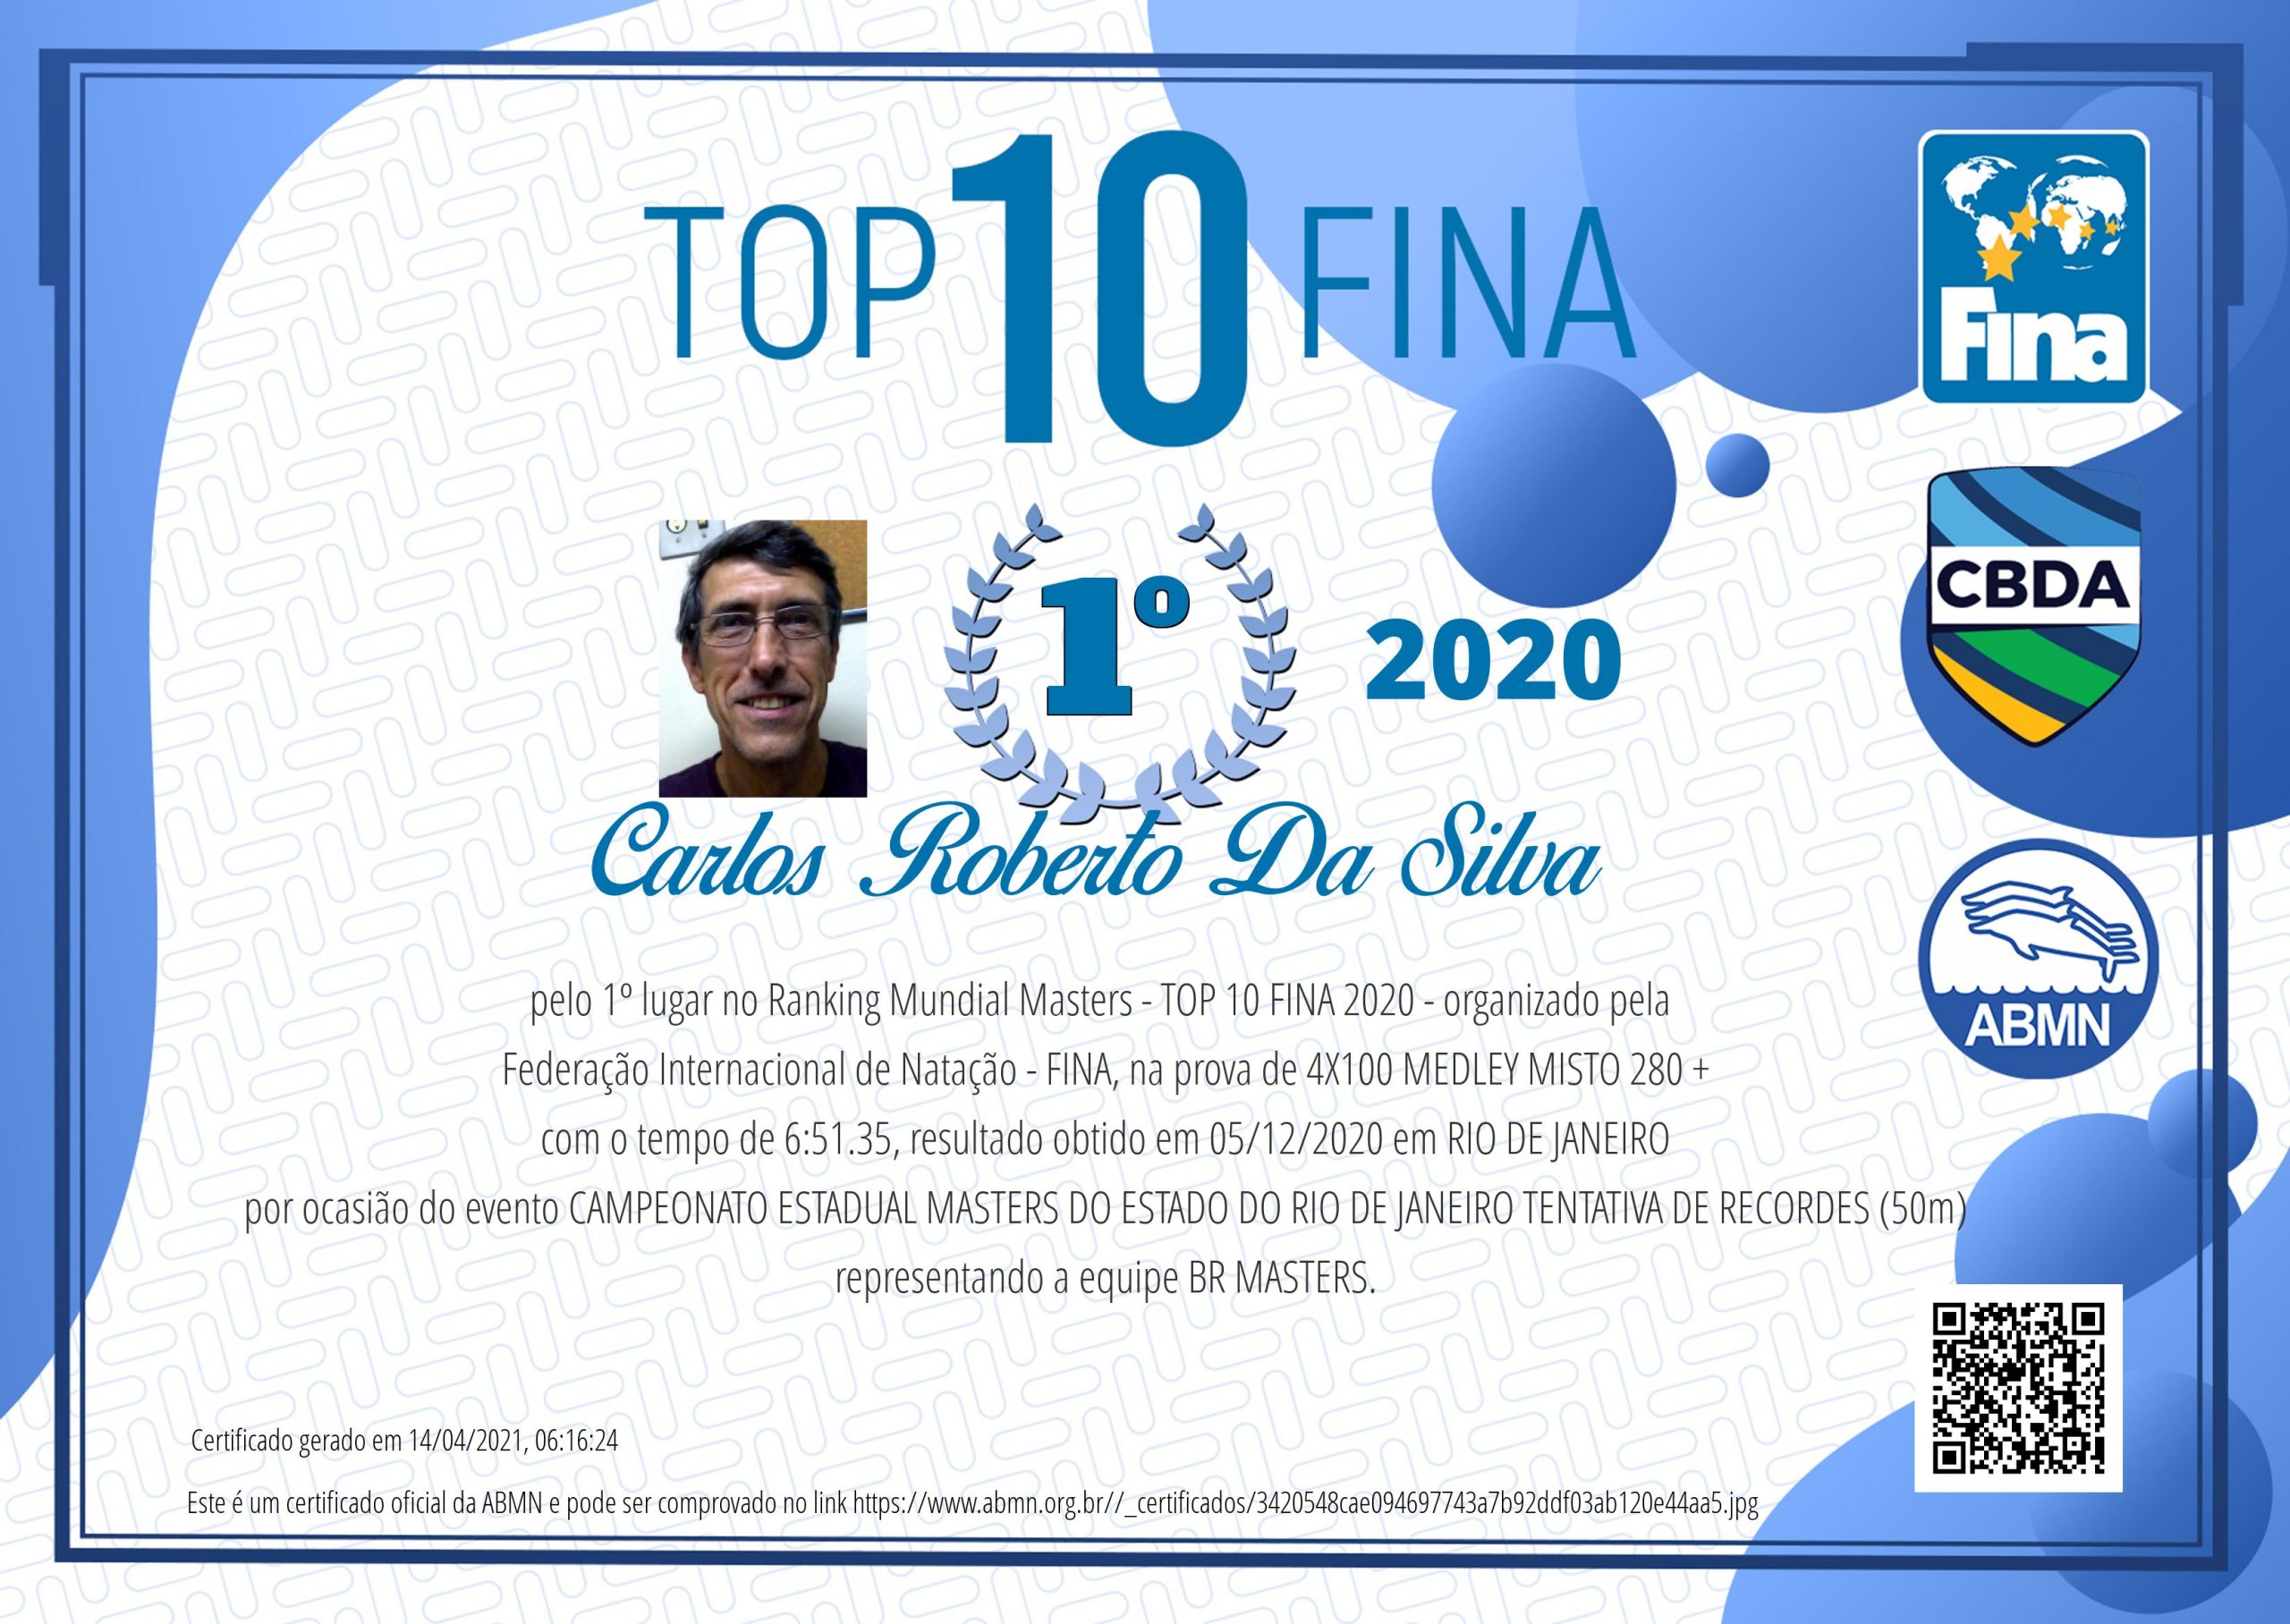 Certificado Digital Top 10 Fina 2020 é Lançado No Site Da Abmn Associação Brasileira De 3491